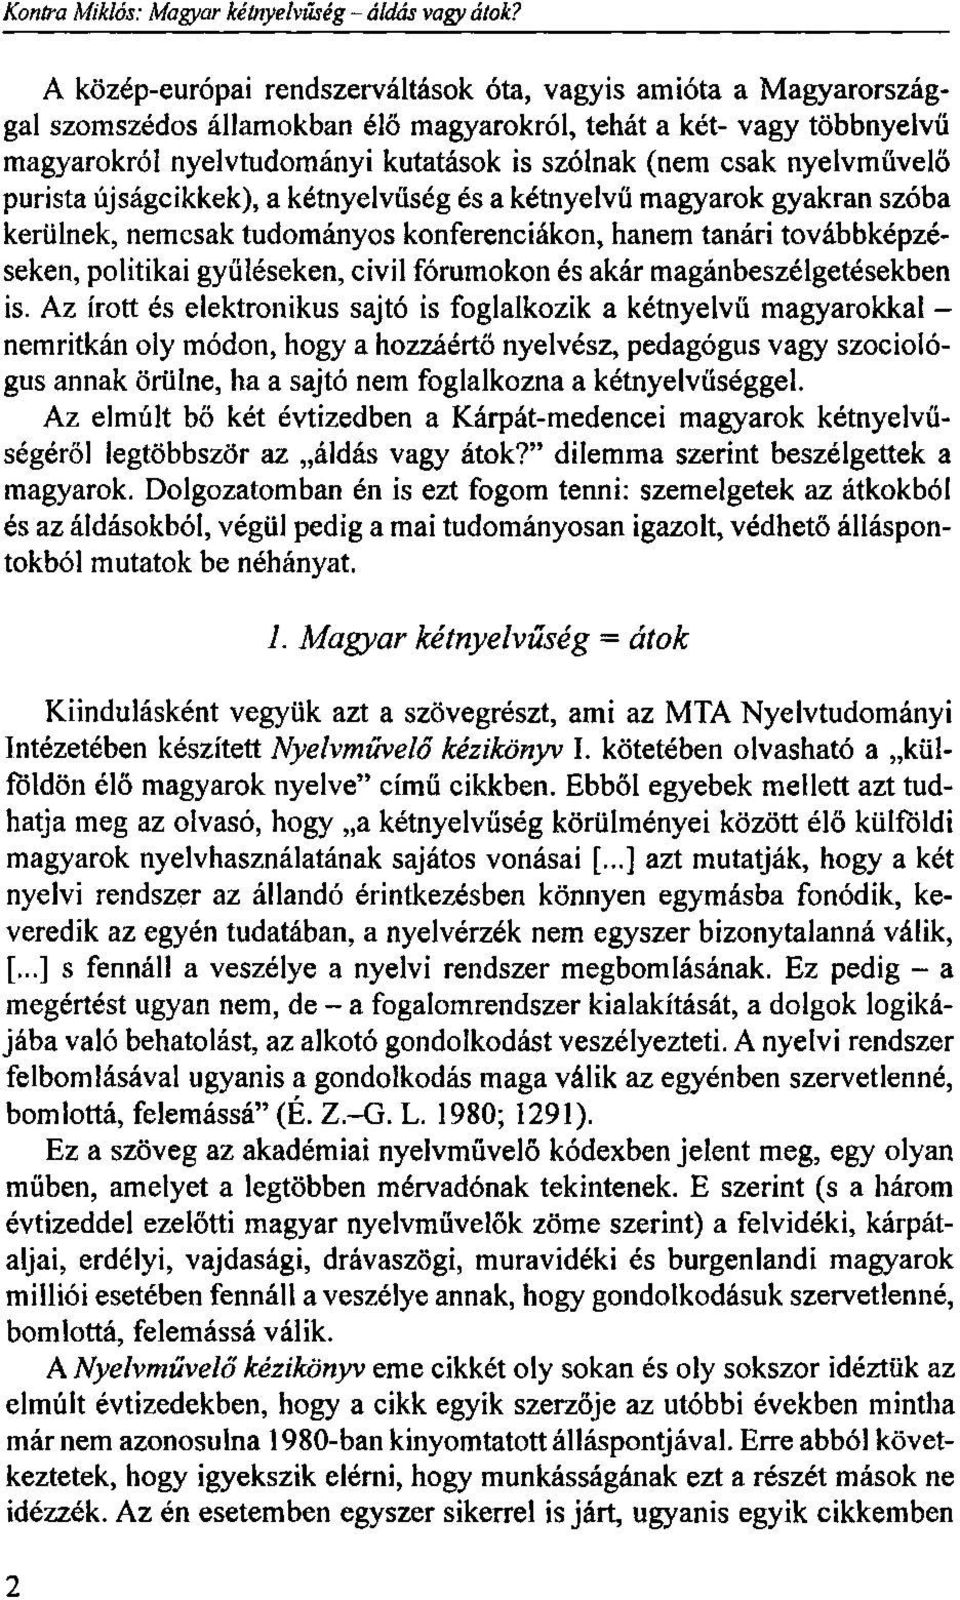 nyelvművelő purista újságcikkek), a kétnyelvűség és a kétnyelvű magyarok gyakran szóba kerülnek, nemcsak tudományos konferenciákon, hanem tanári továbbképzéseken, politikai gyűléseken, civil